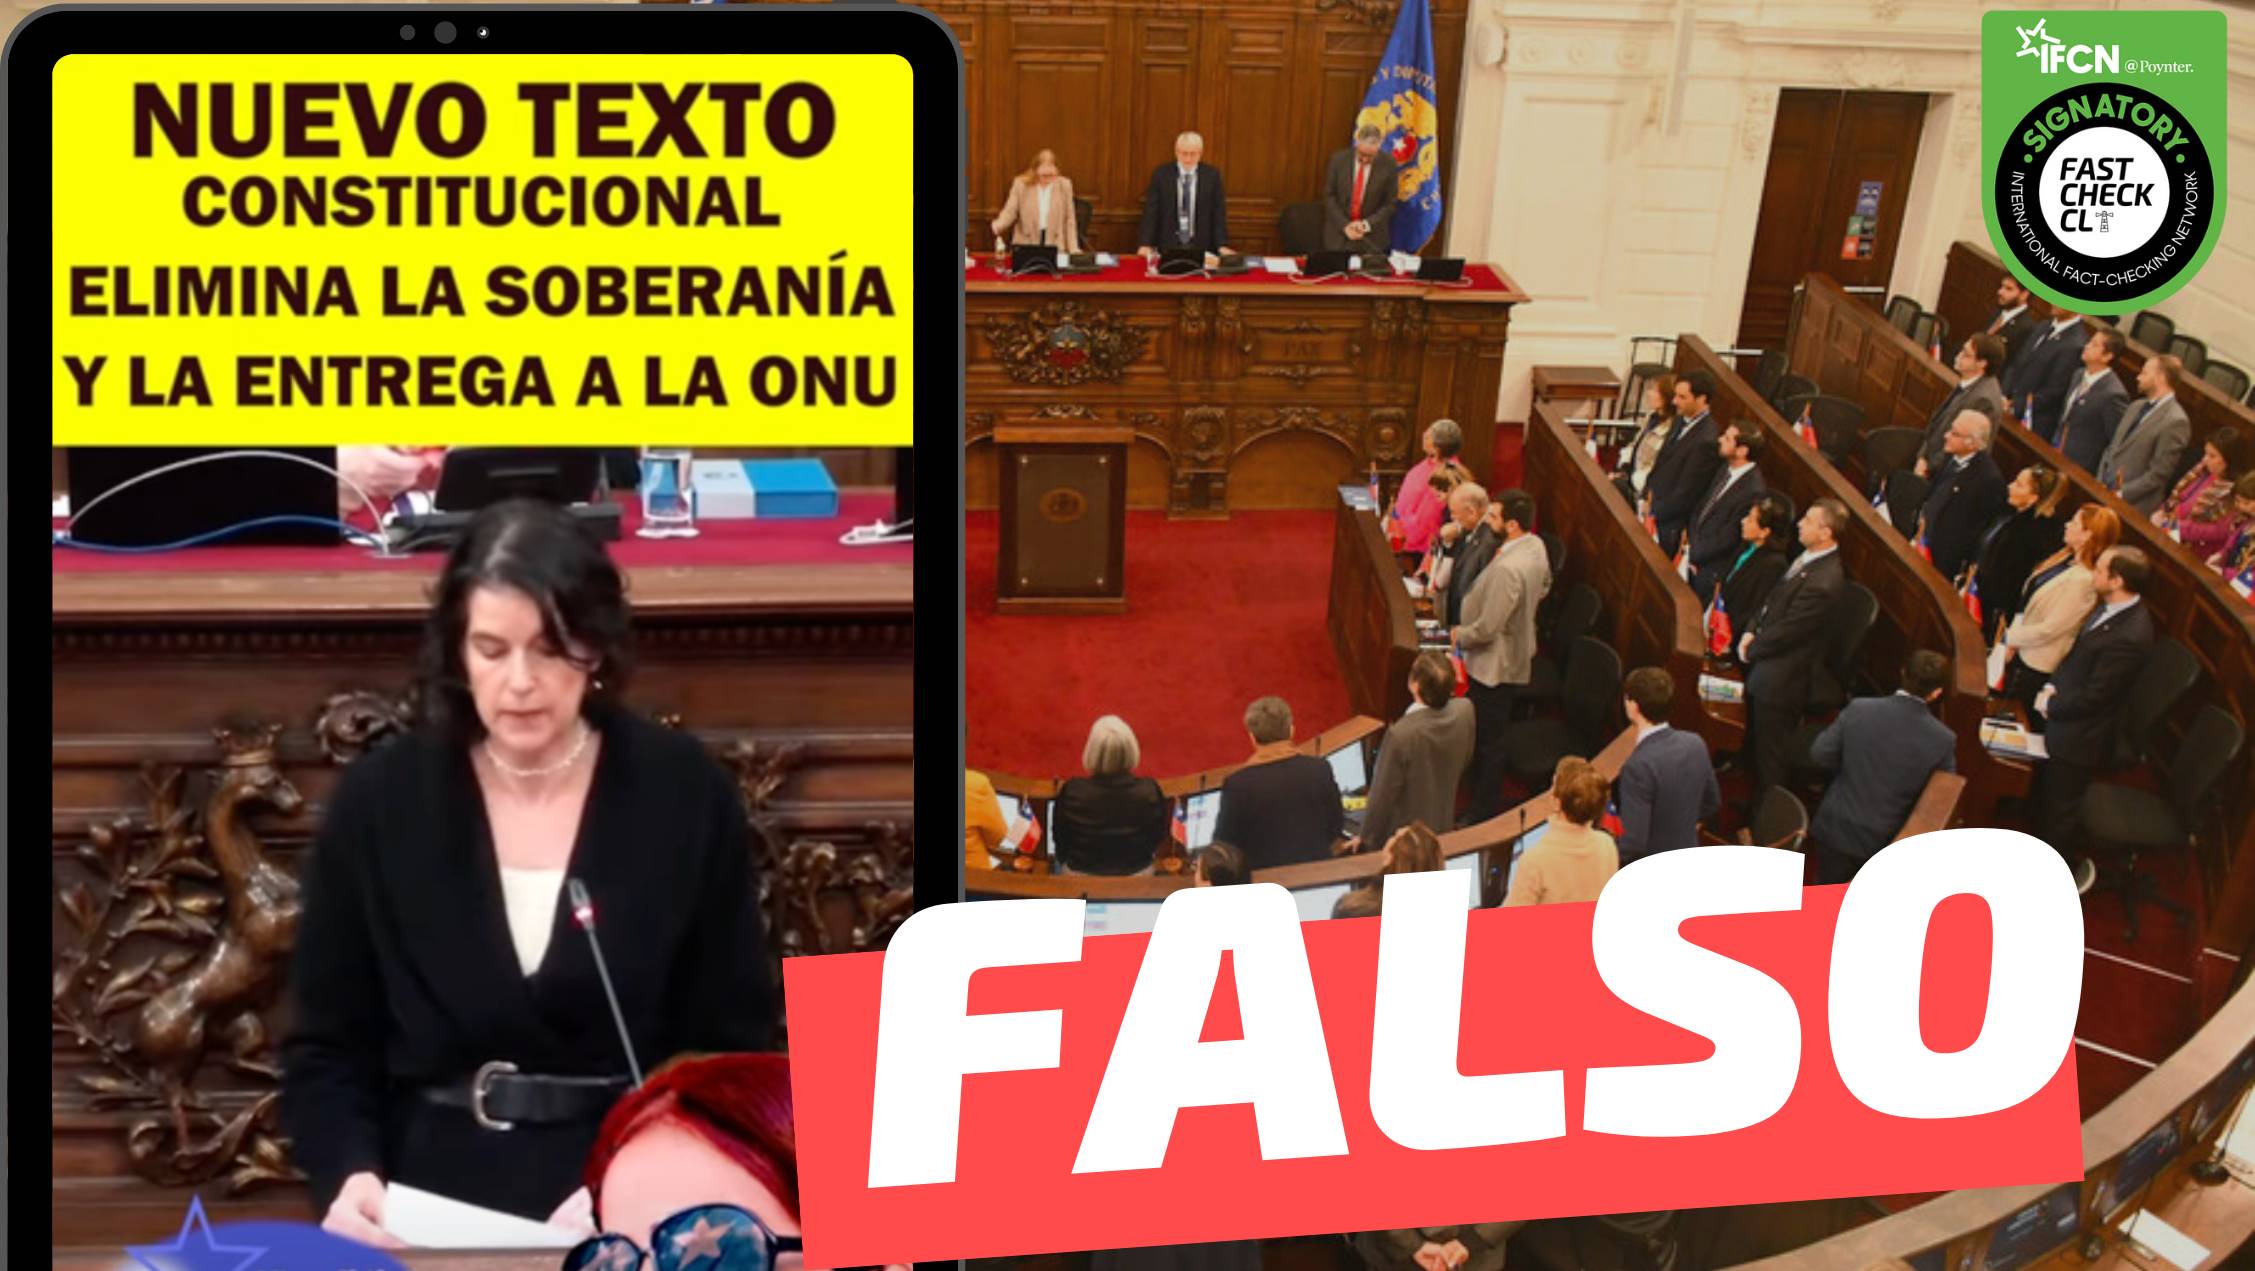 You are currently viewing (Video) “Nuevo texto constitucional elimina la soberanía y la entrega a la ONU”: #Falso